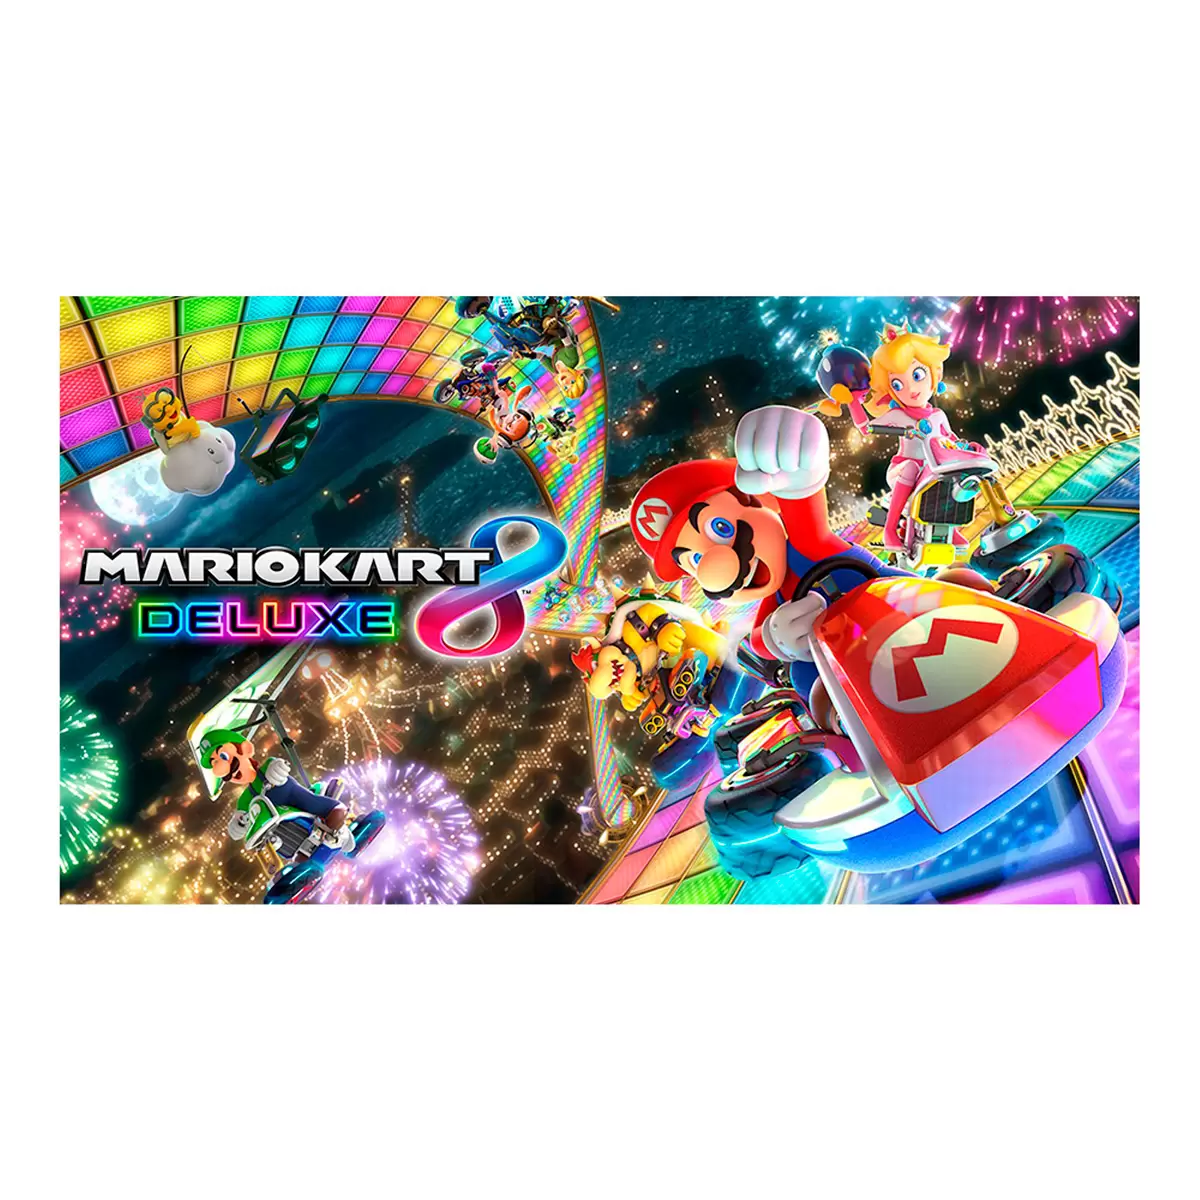 Nintendo Switch - Mario Kart 8 Deluxe